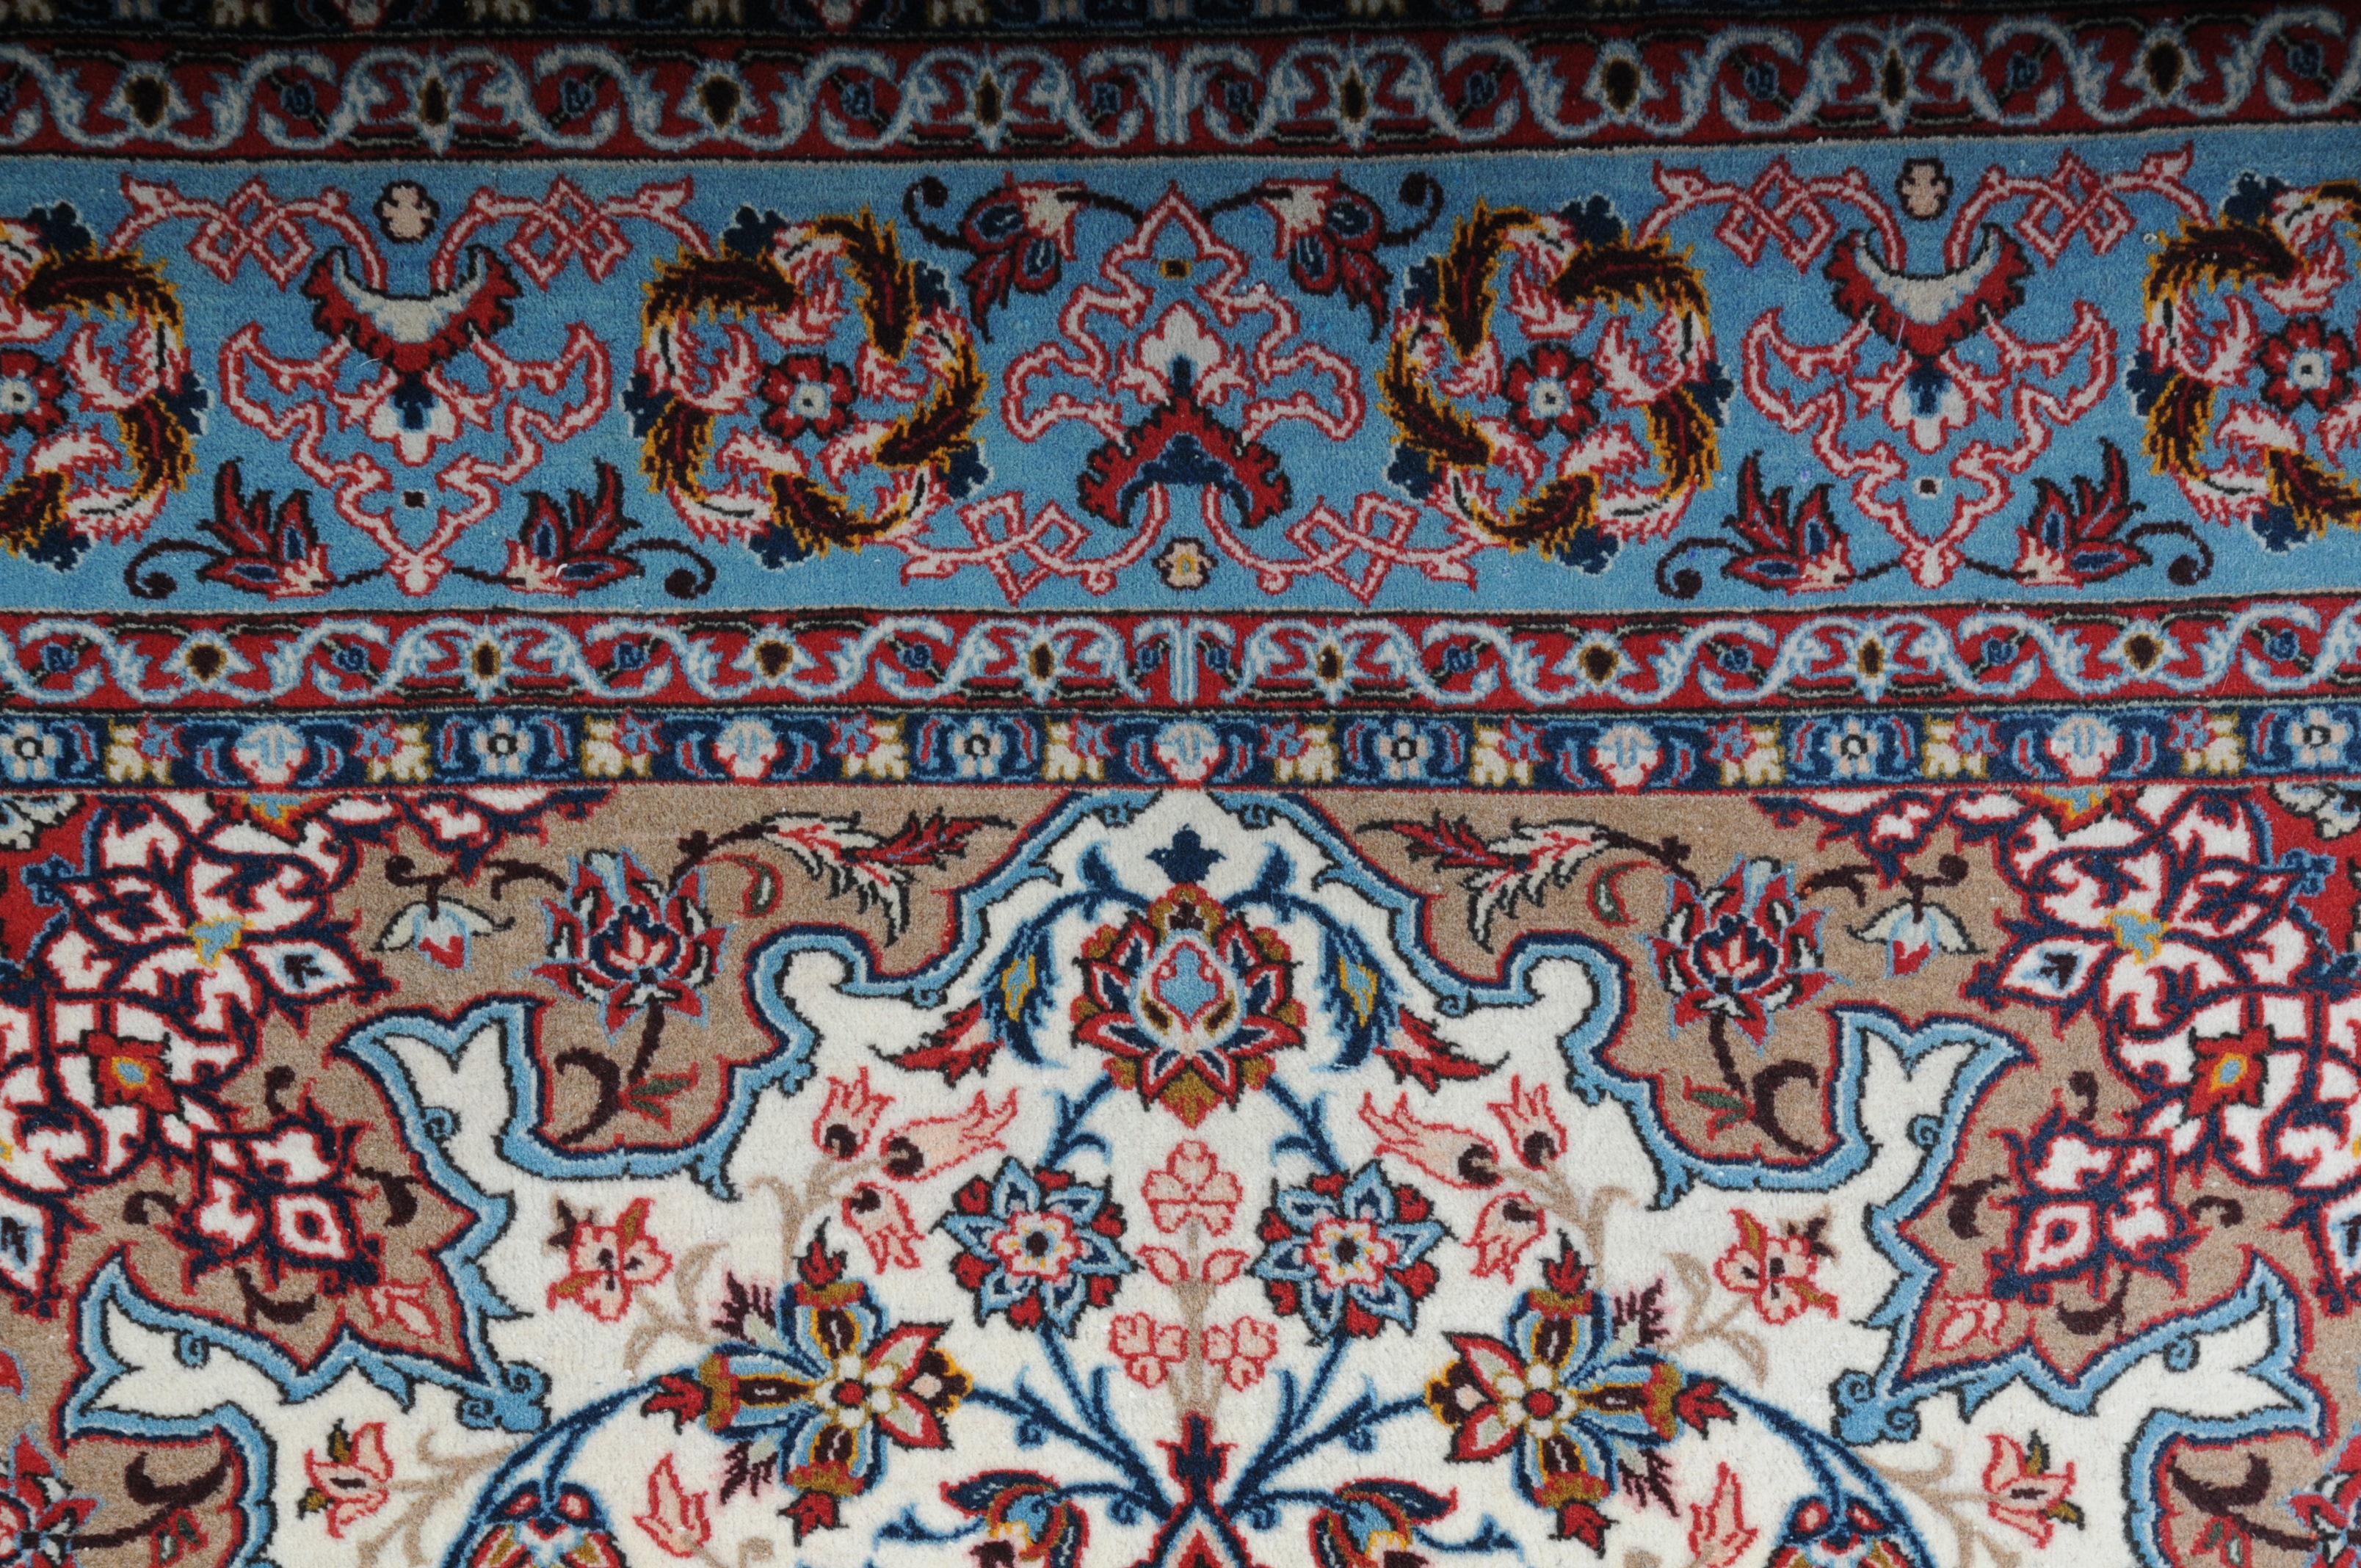 Original Isfahan Teppich 20. Jahrhundert

Schöner Isfahan-Teppich mit Mandalas.
Prachtvolle Farben prägen diesen symmetrisch angelegten und fein geknüpften Teppich.
Leuchtend farbiger Spiegel mit feldfüllendem, passendem ovalem Medaillon und